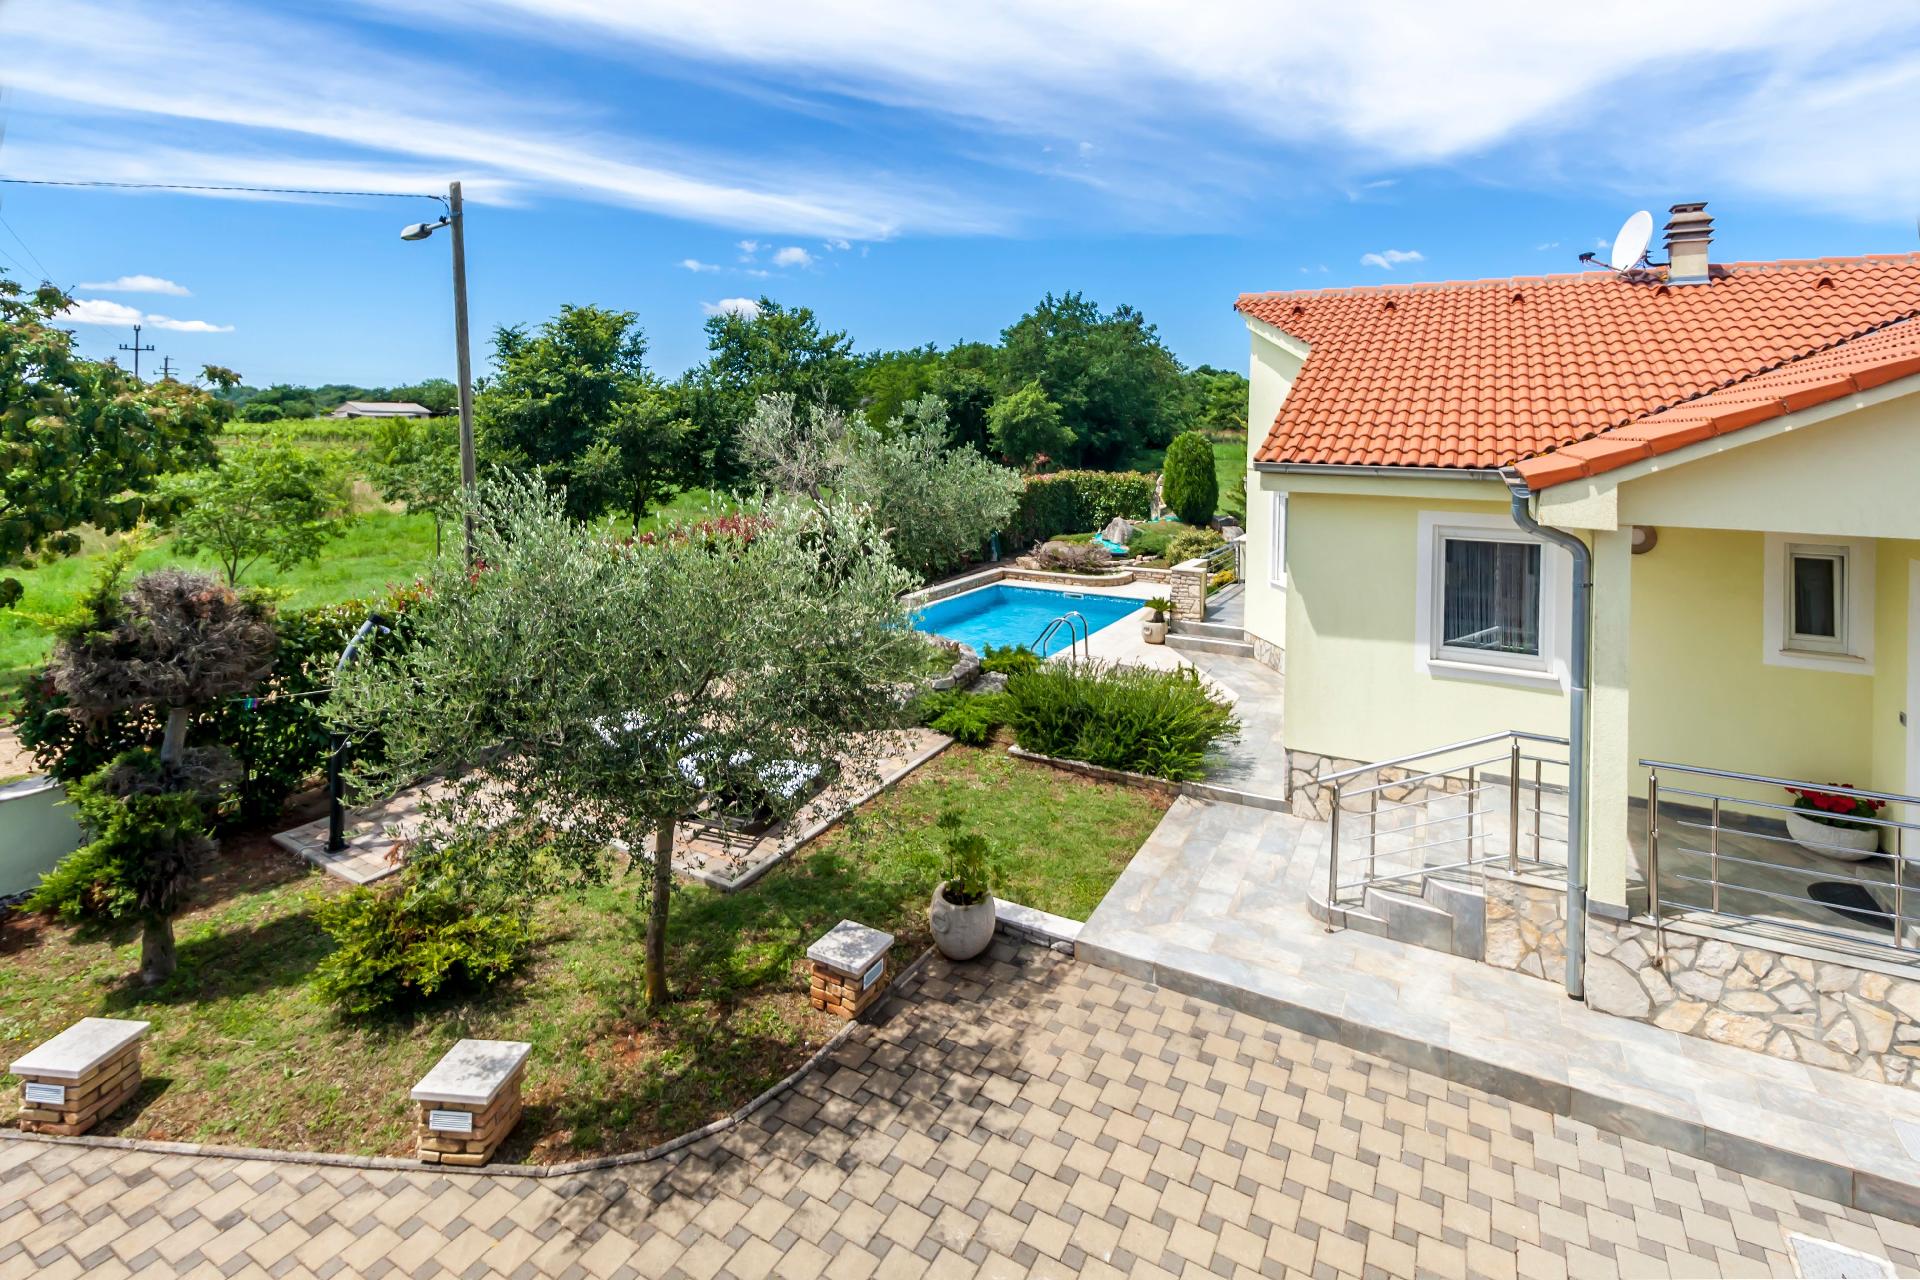 Stilvolle Ferienvilla mit Garten, Terrasse, Spielp Ferienhaus in Istrien